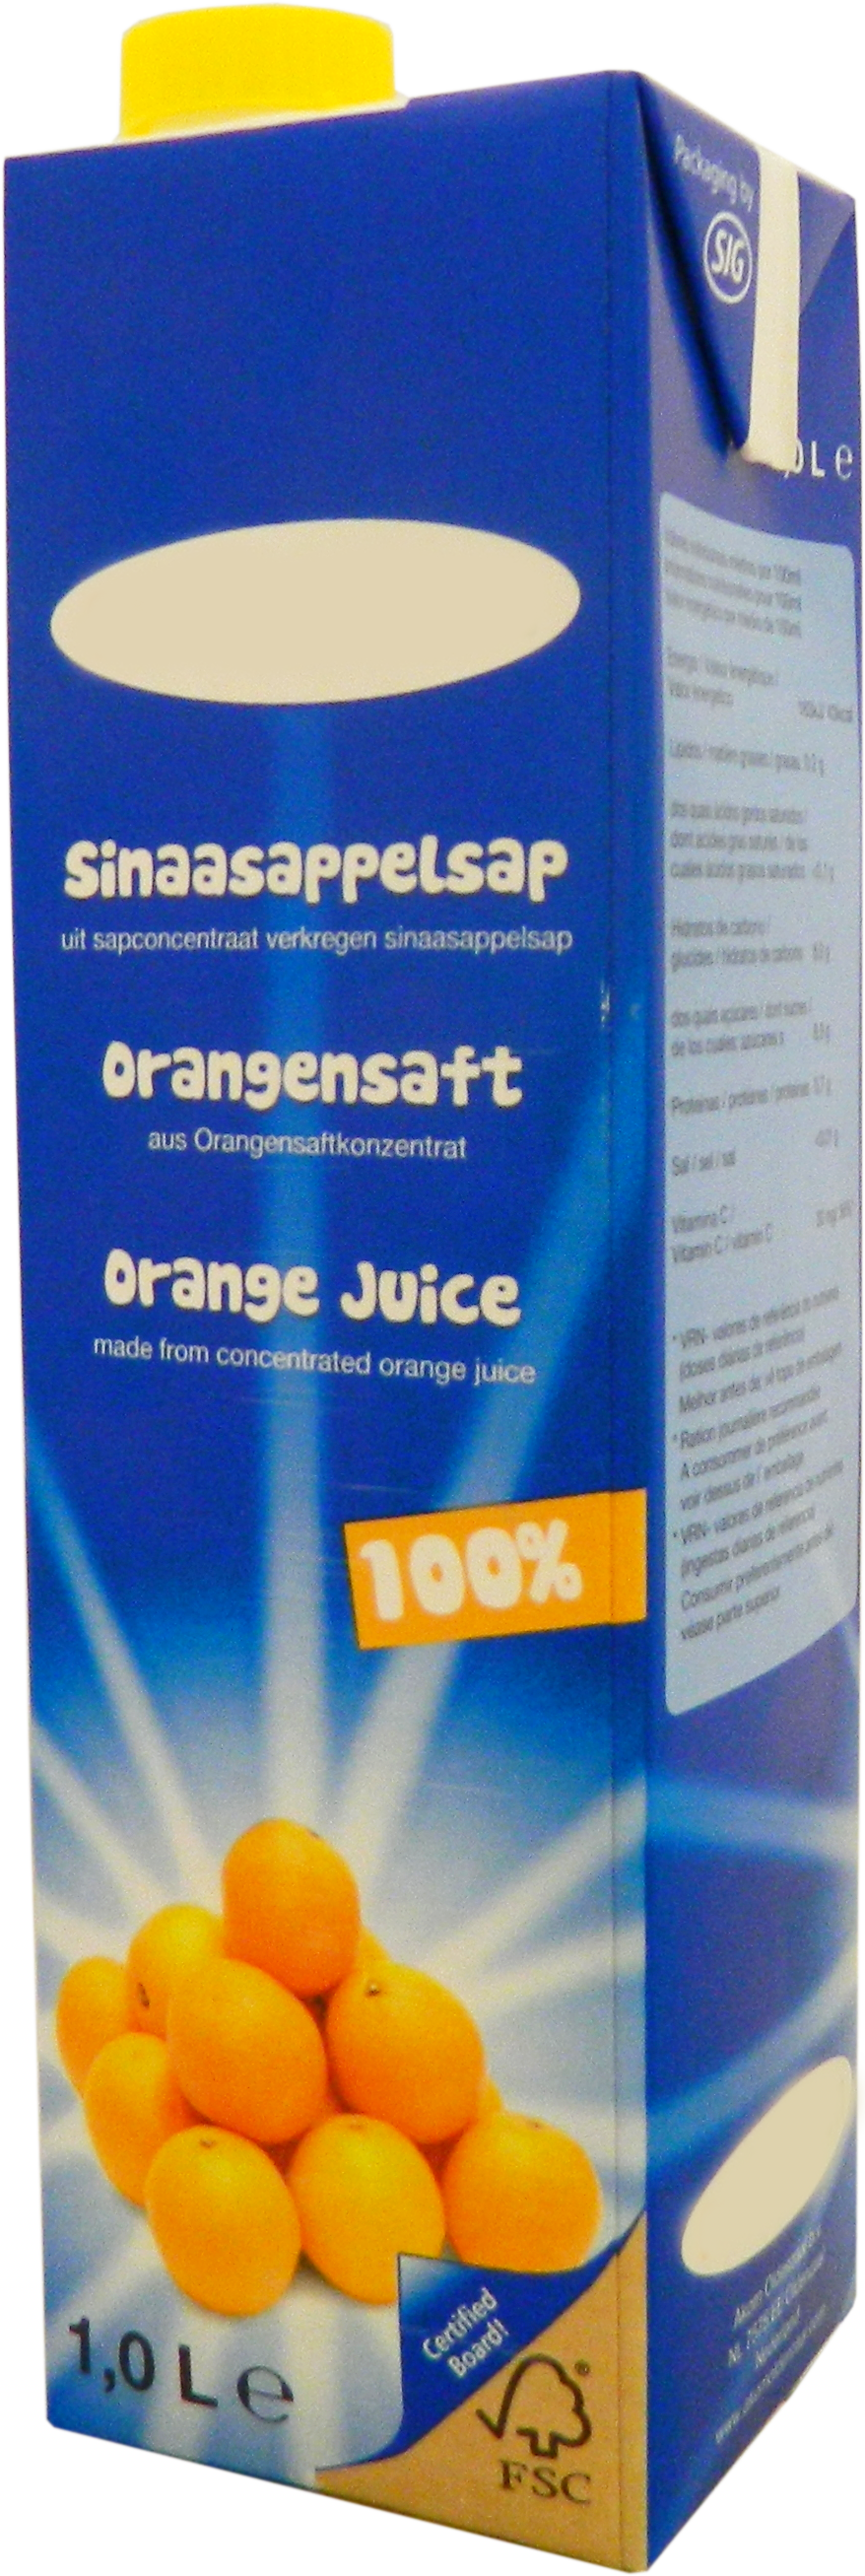 Premium Orange juice 1,0 liter